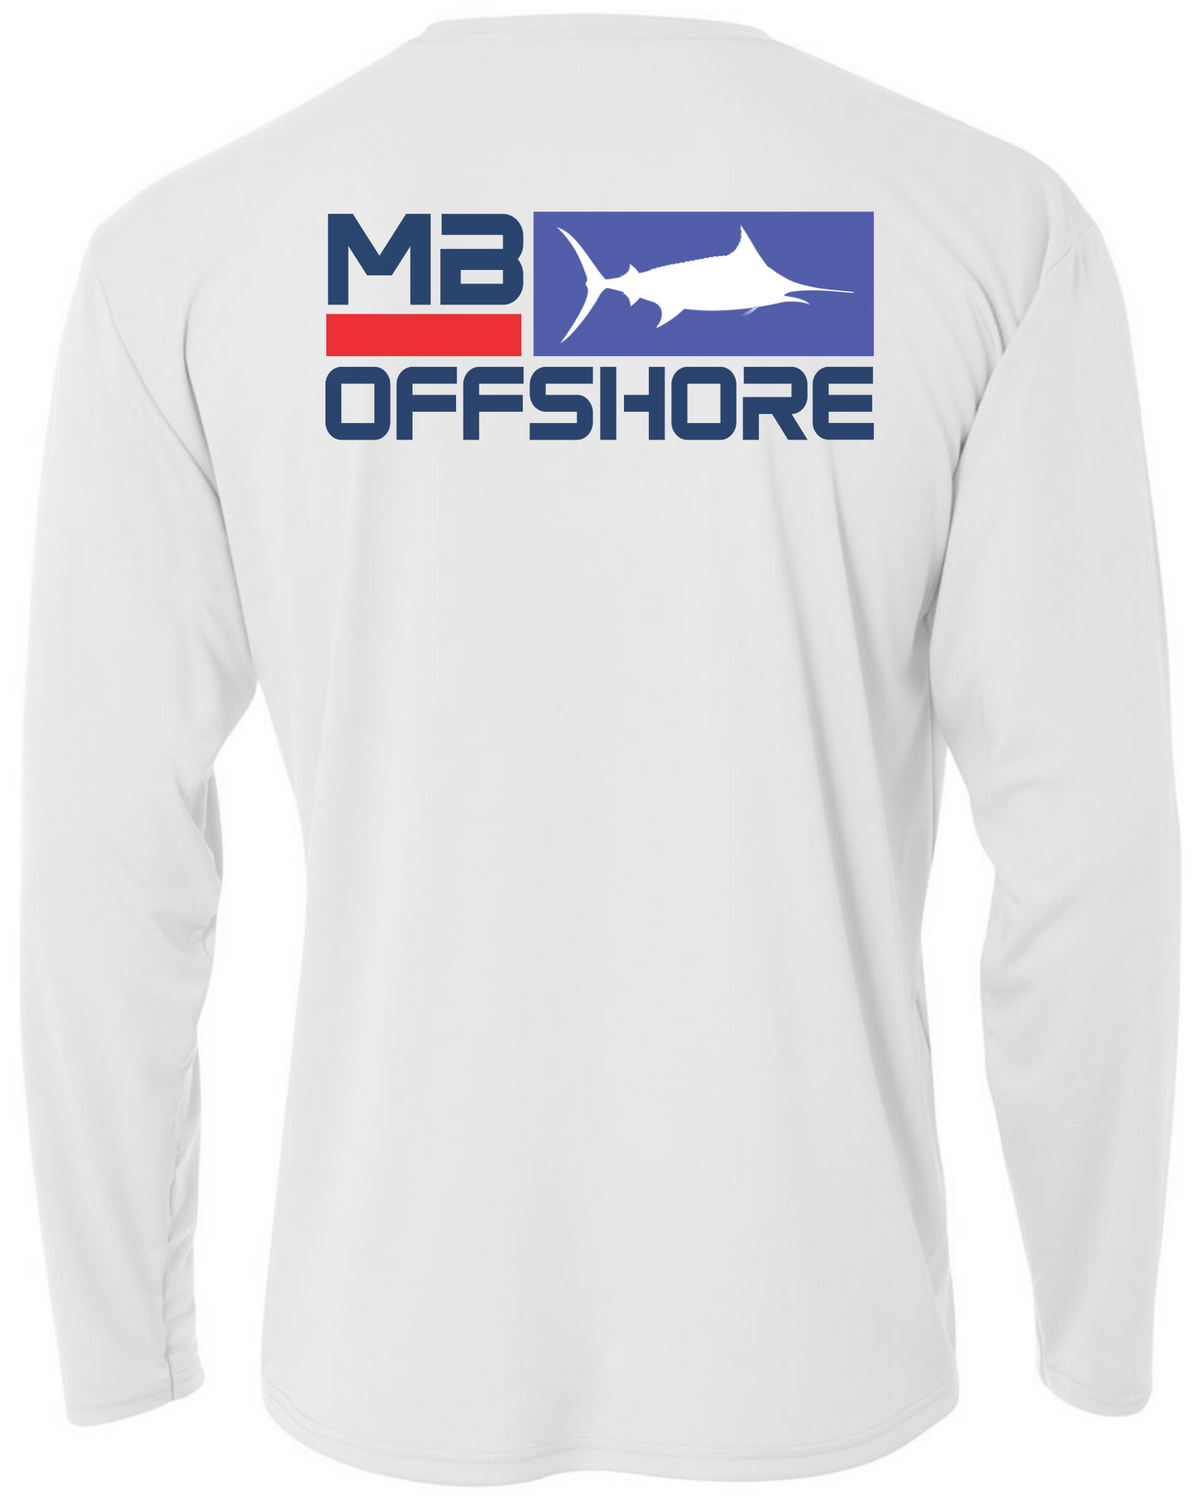 MadBull Pro Angler Performance Fishing Shirt